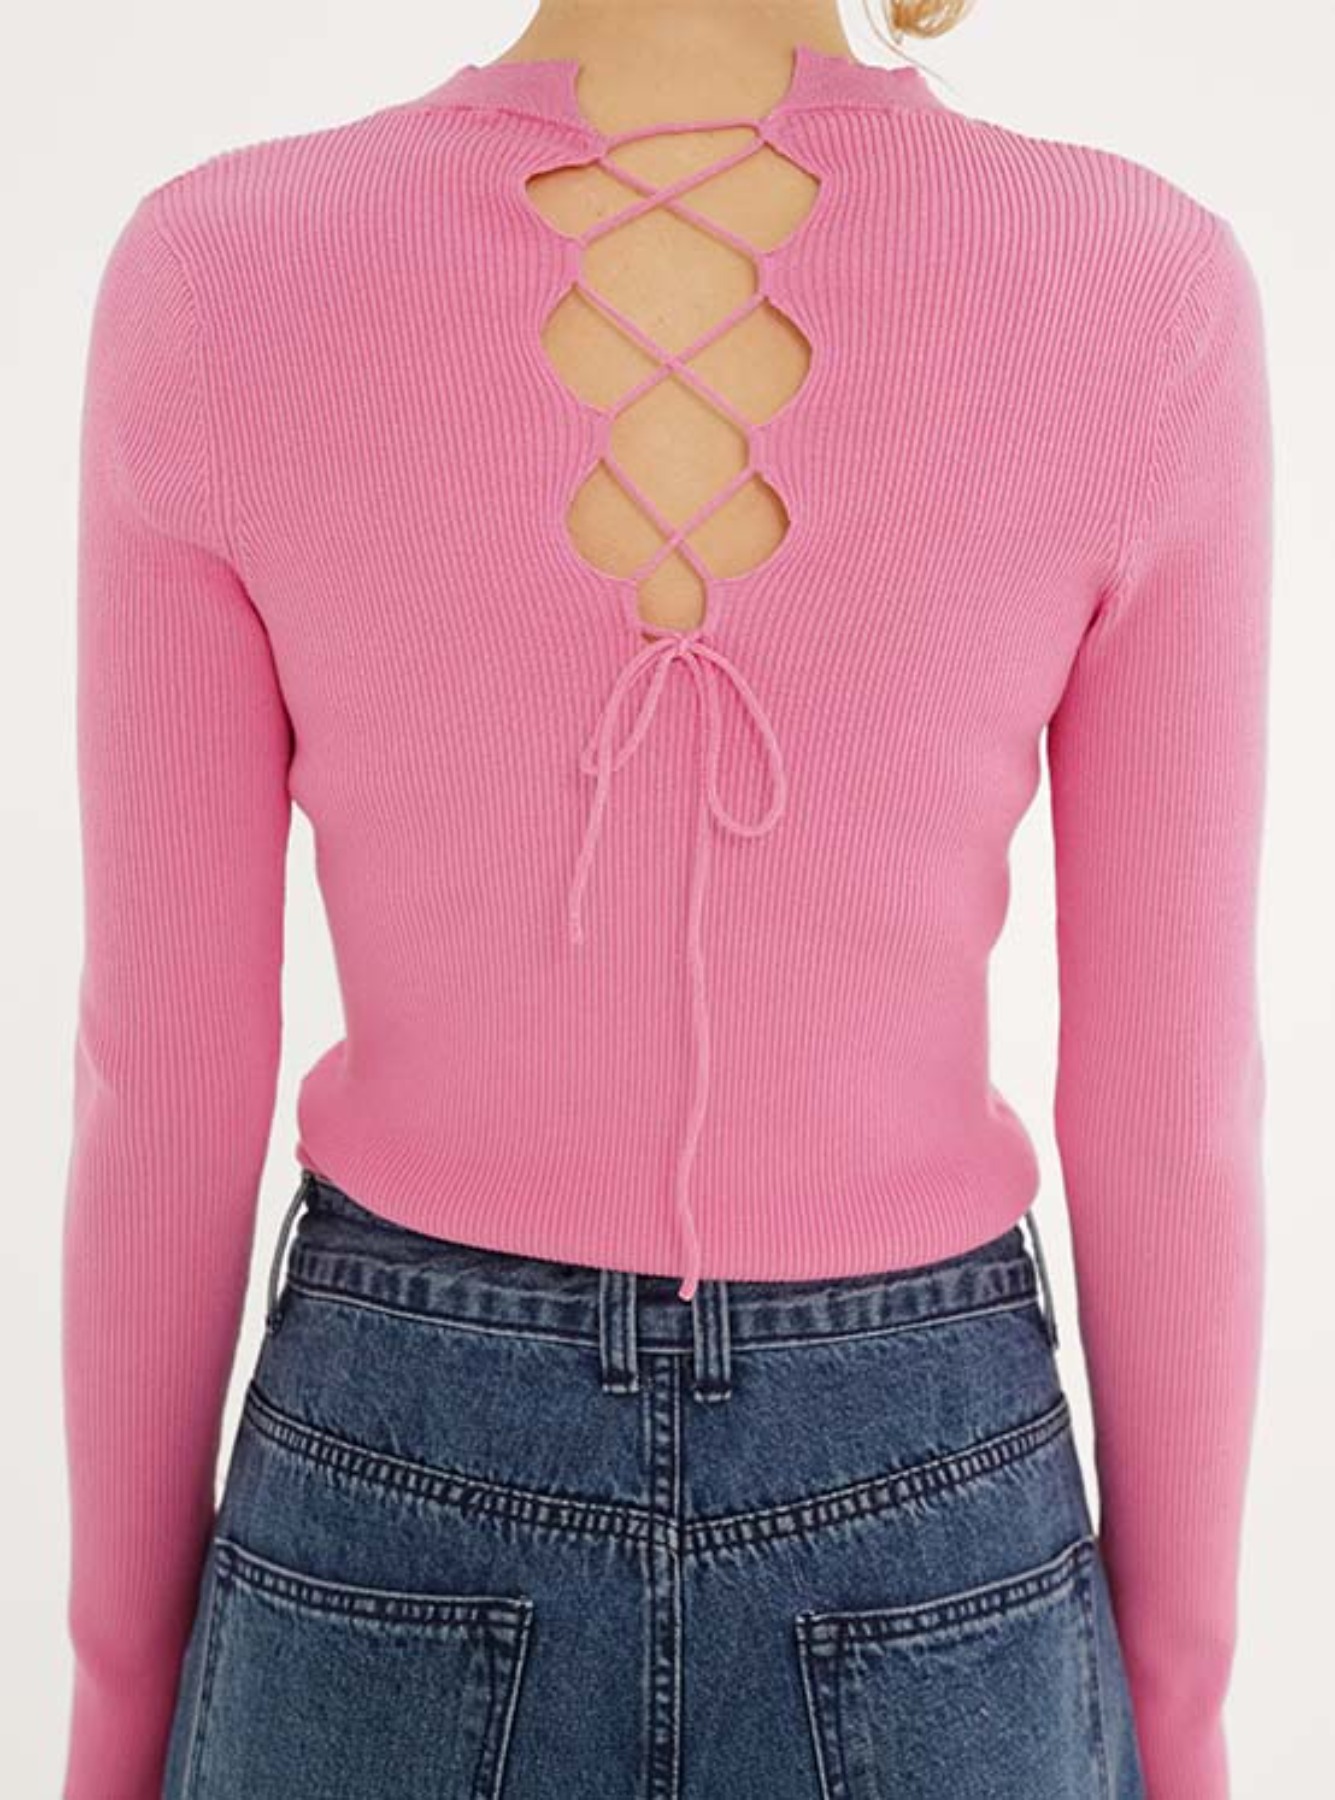 Back String Knit Top in Pink VK3SP140-72